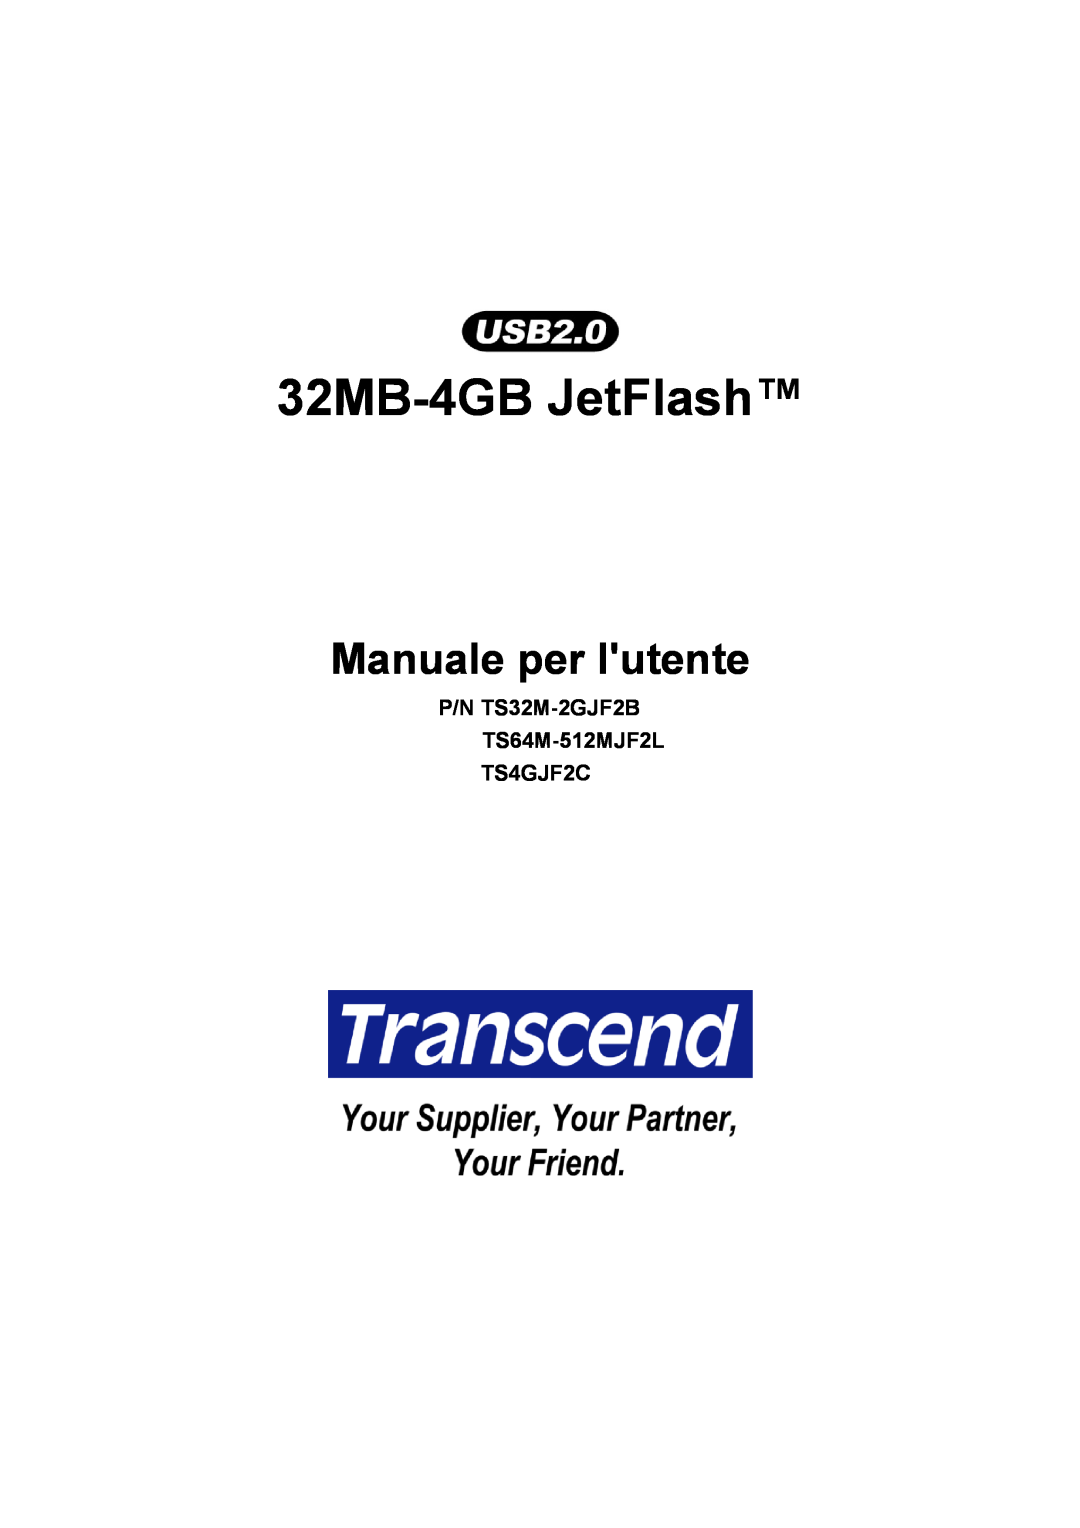 Transcend Information TS64M-512MJF2L, TS4GJF2C, TS32M-2GJF2B manual 32MB-4GB JetFlash, Manuale per lutente 